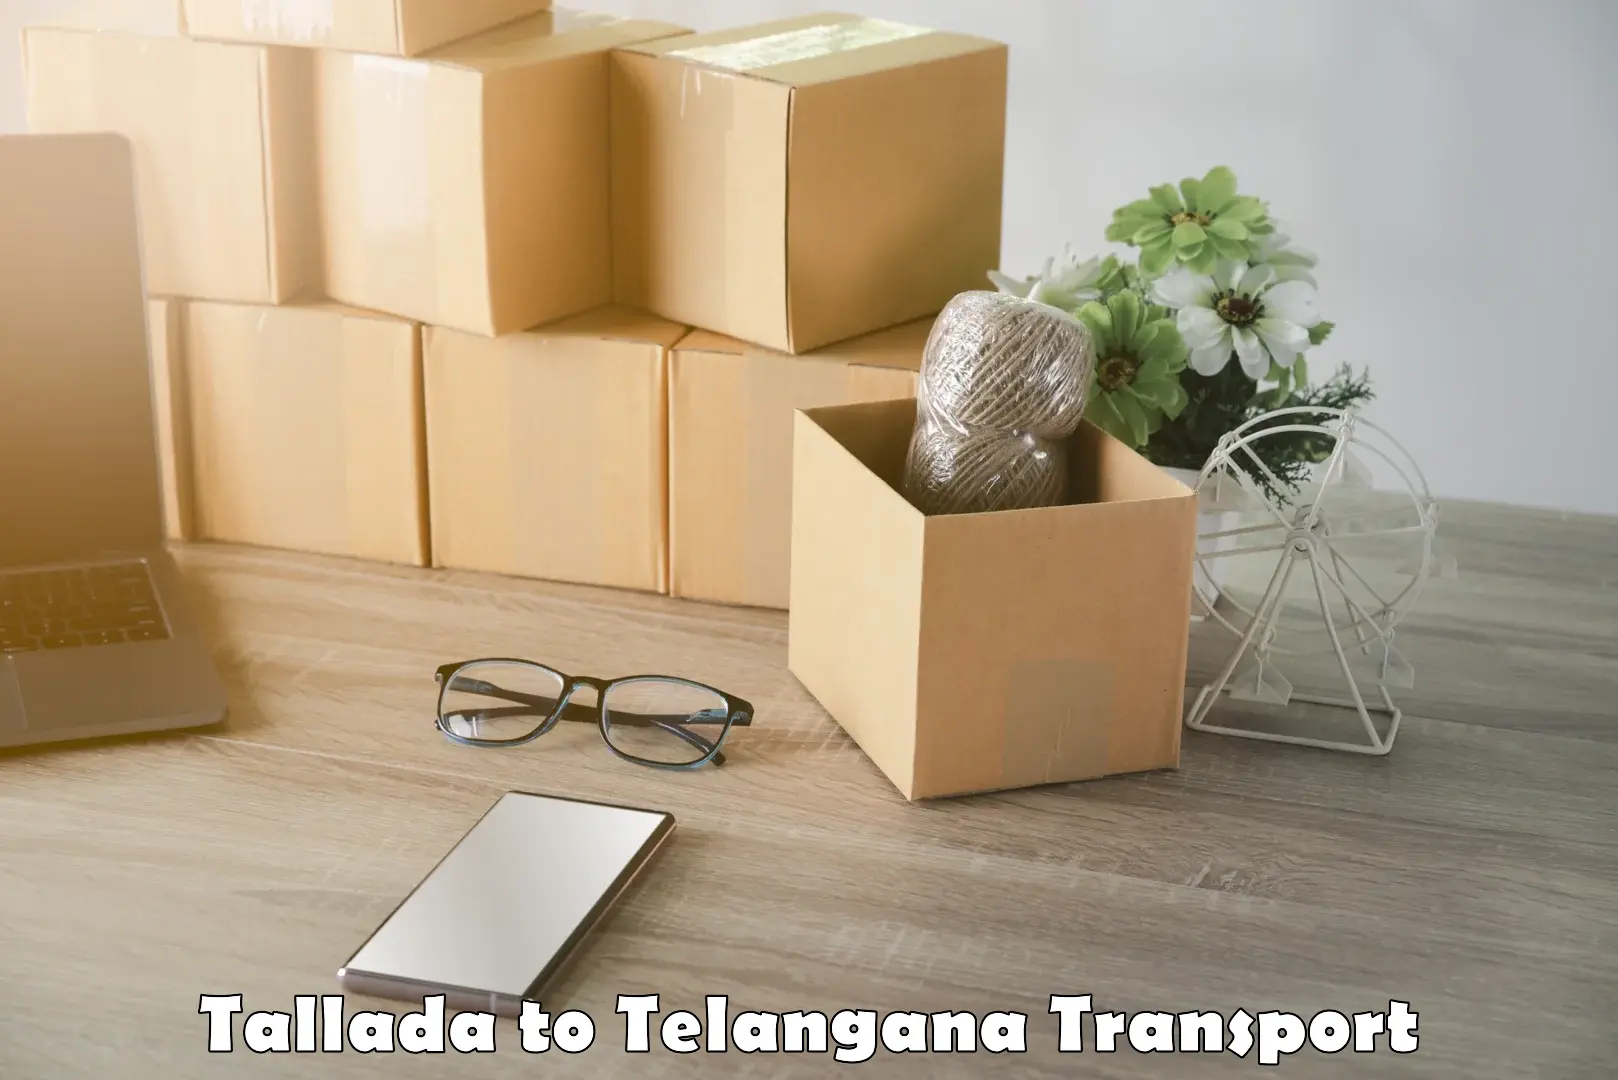 Daily parcel service transport Tallada to Chevella